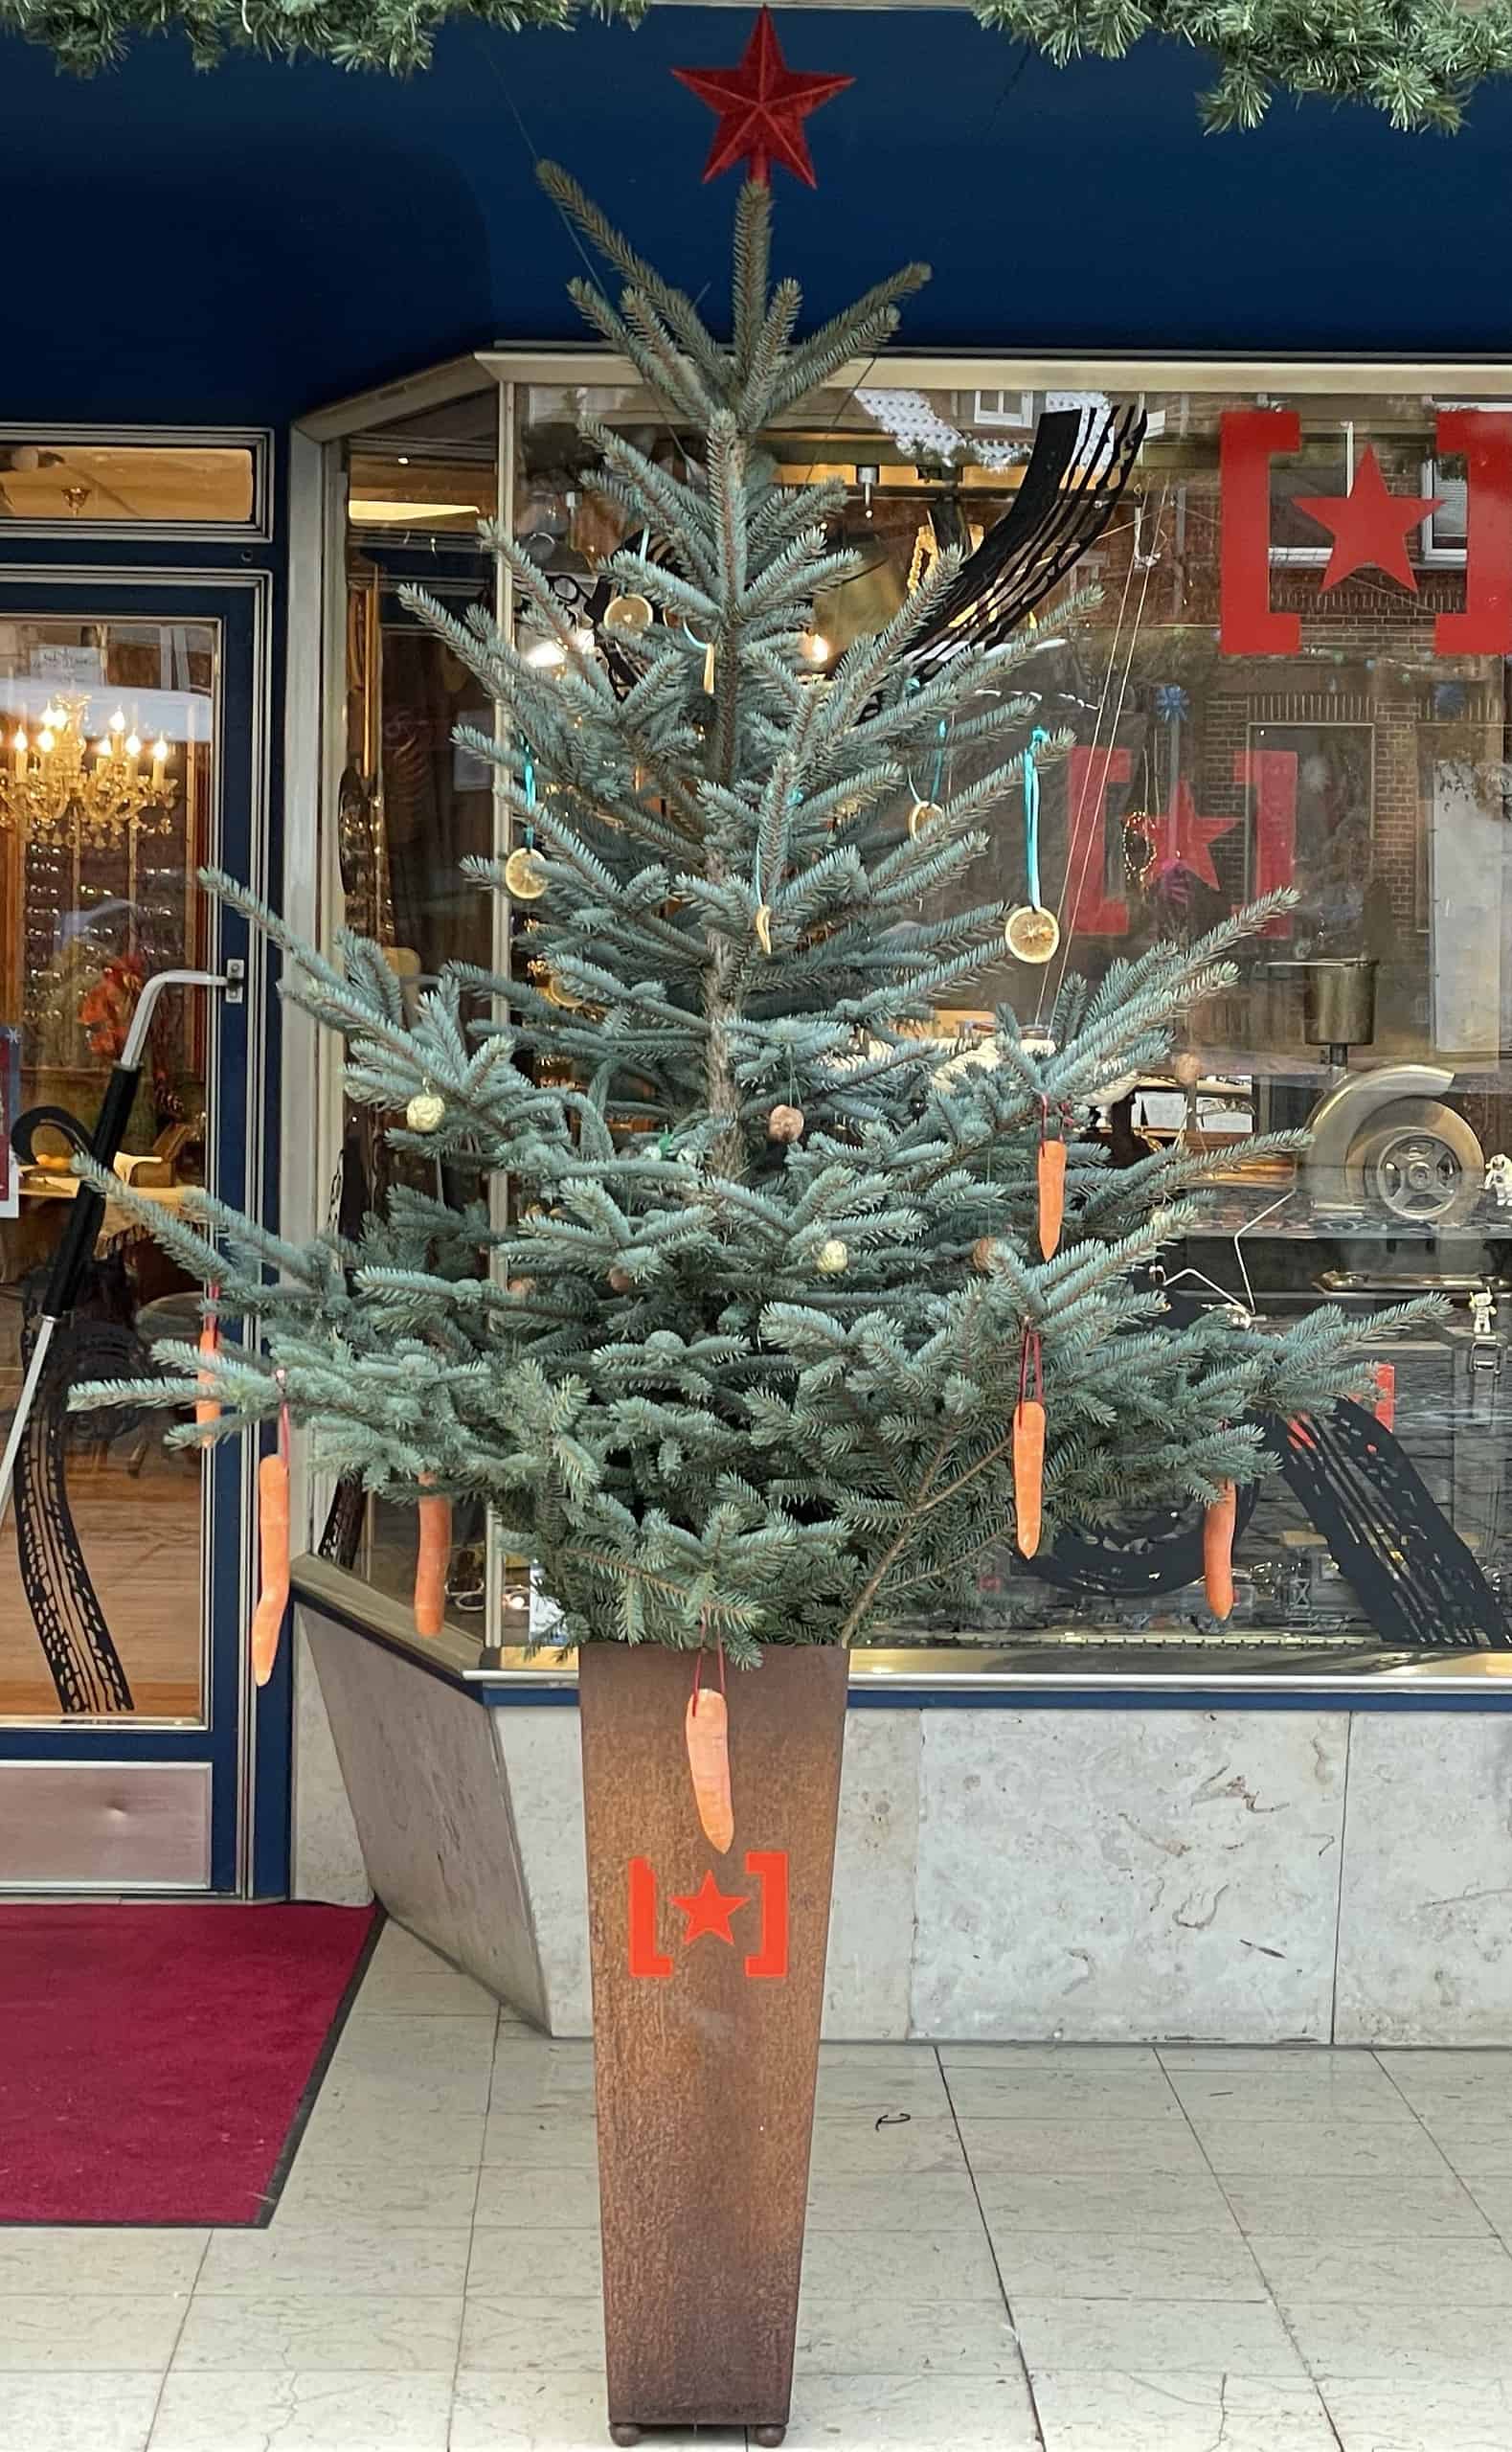 Weihnachtsbaum vor Optikergeschäft mit Karotten geschmückt.